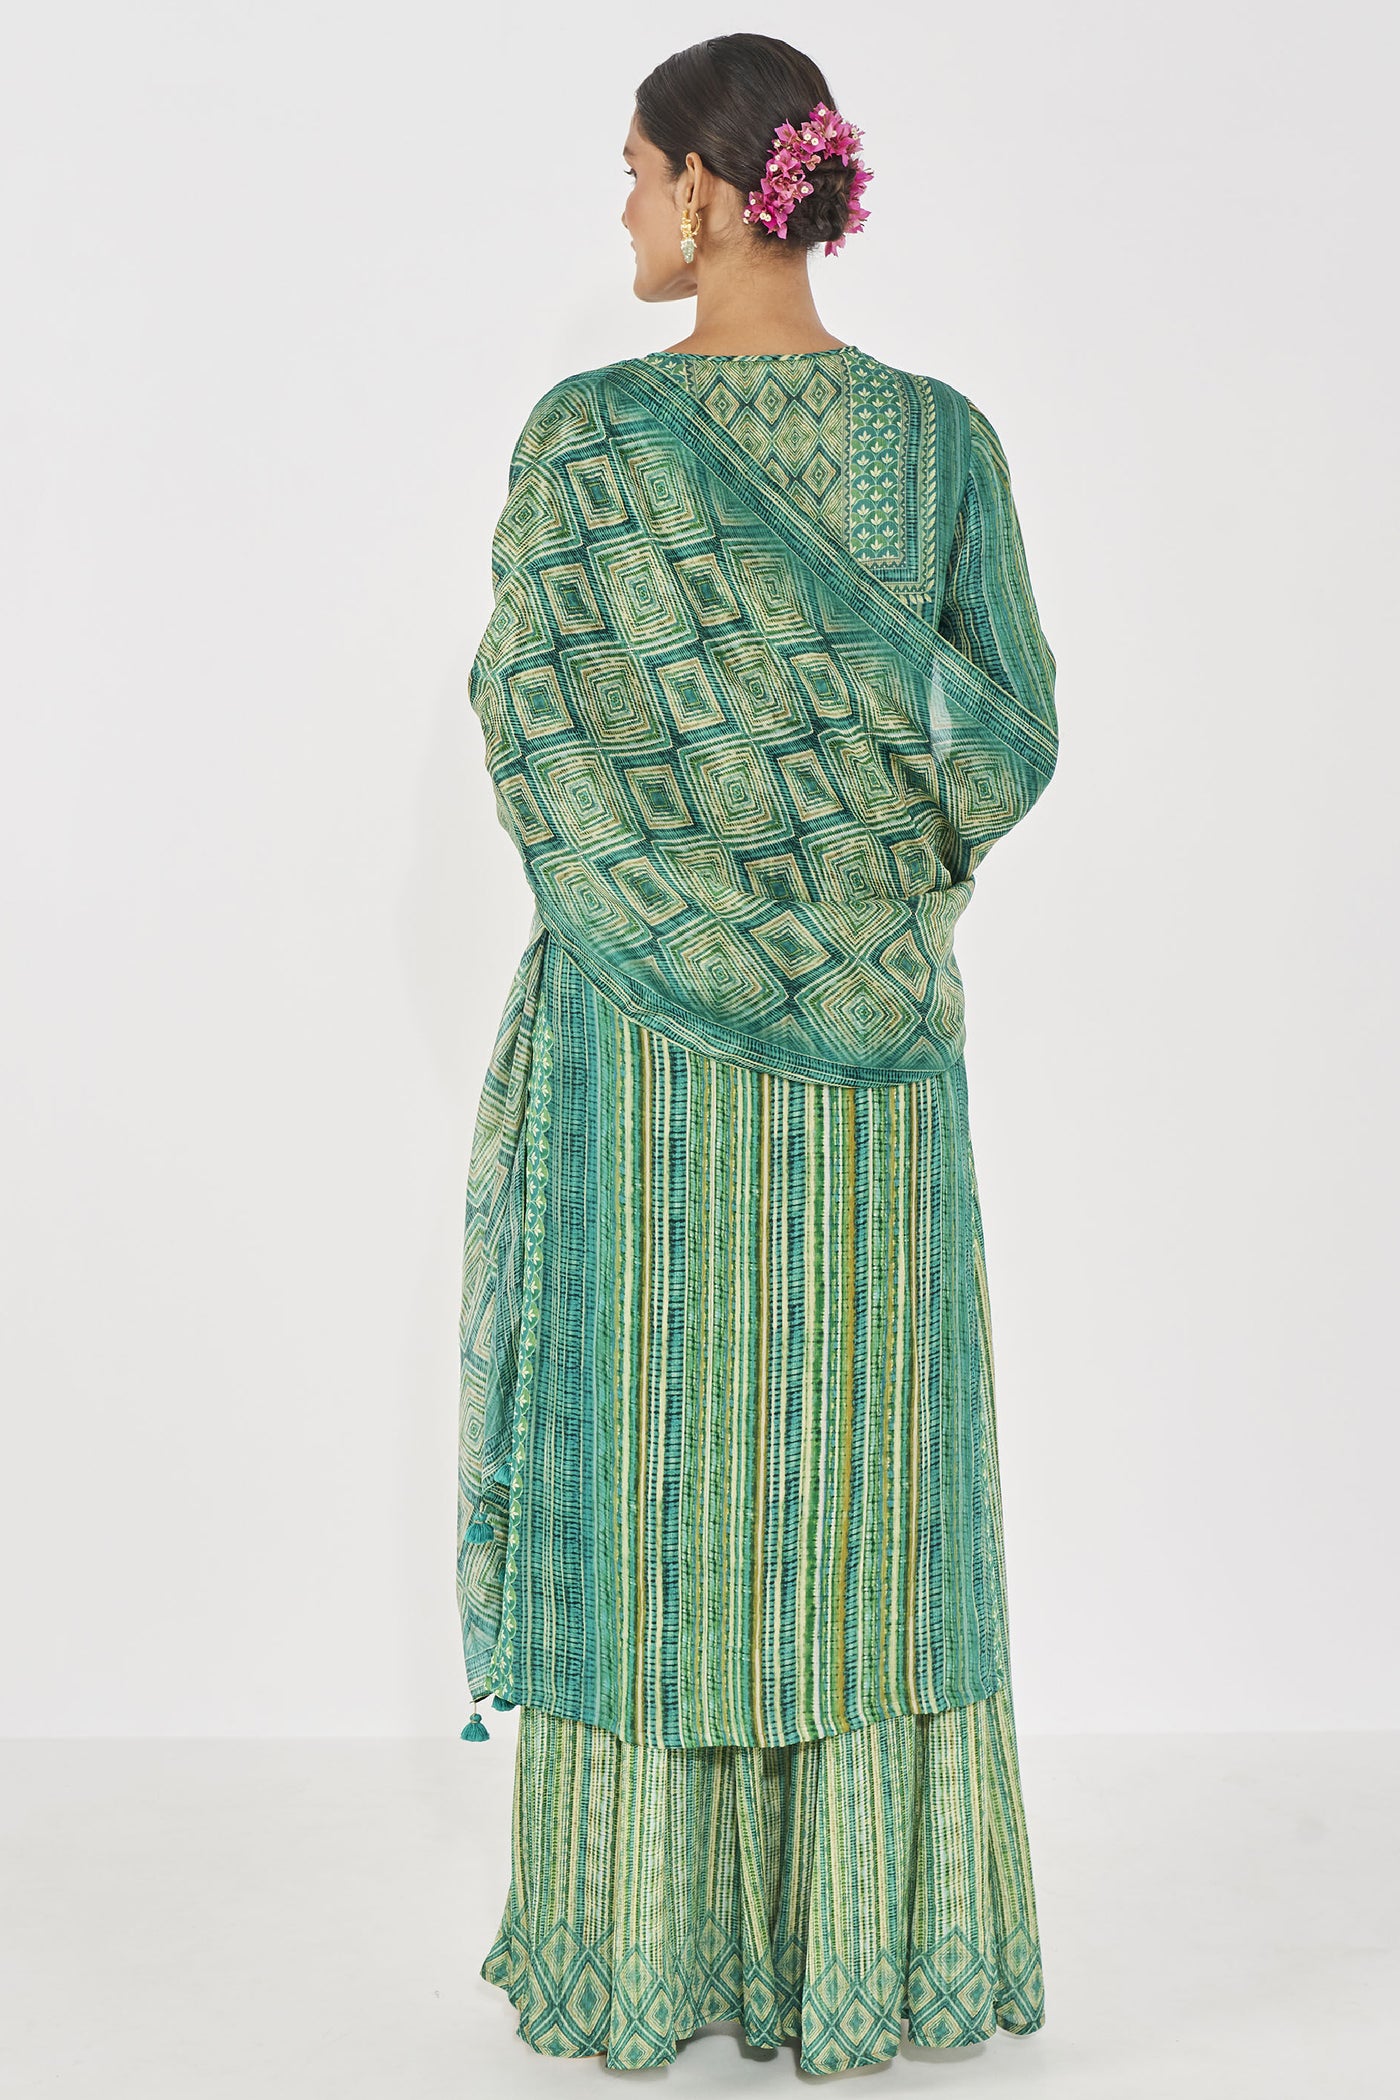 Anita Dongre Roohi Kurta Set Green Indian designer wear online shopping melange singapore